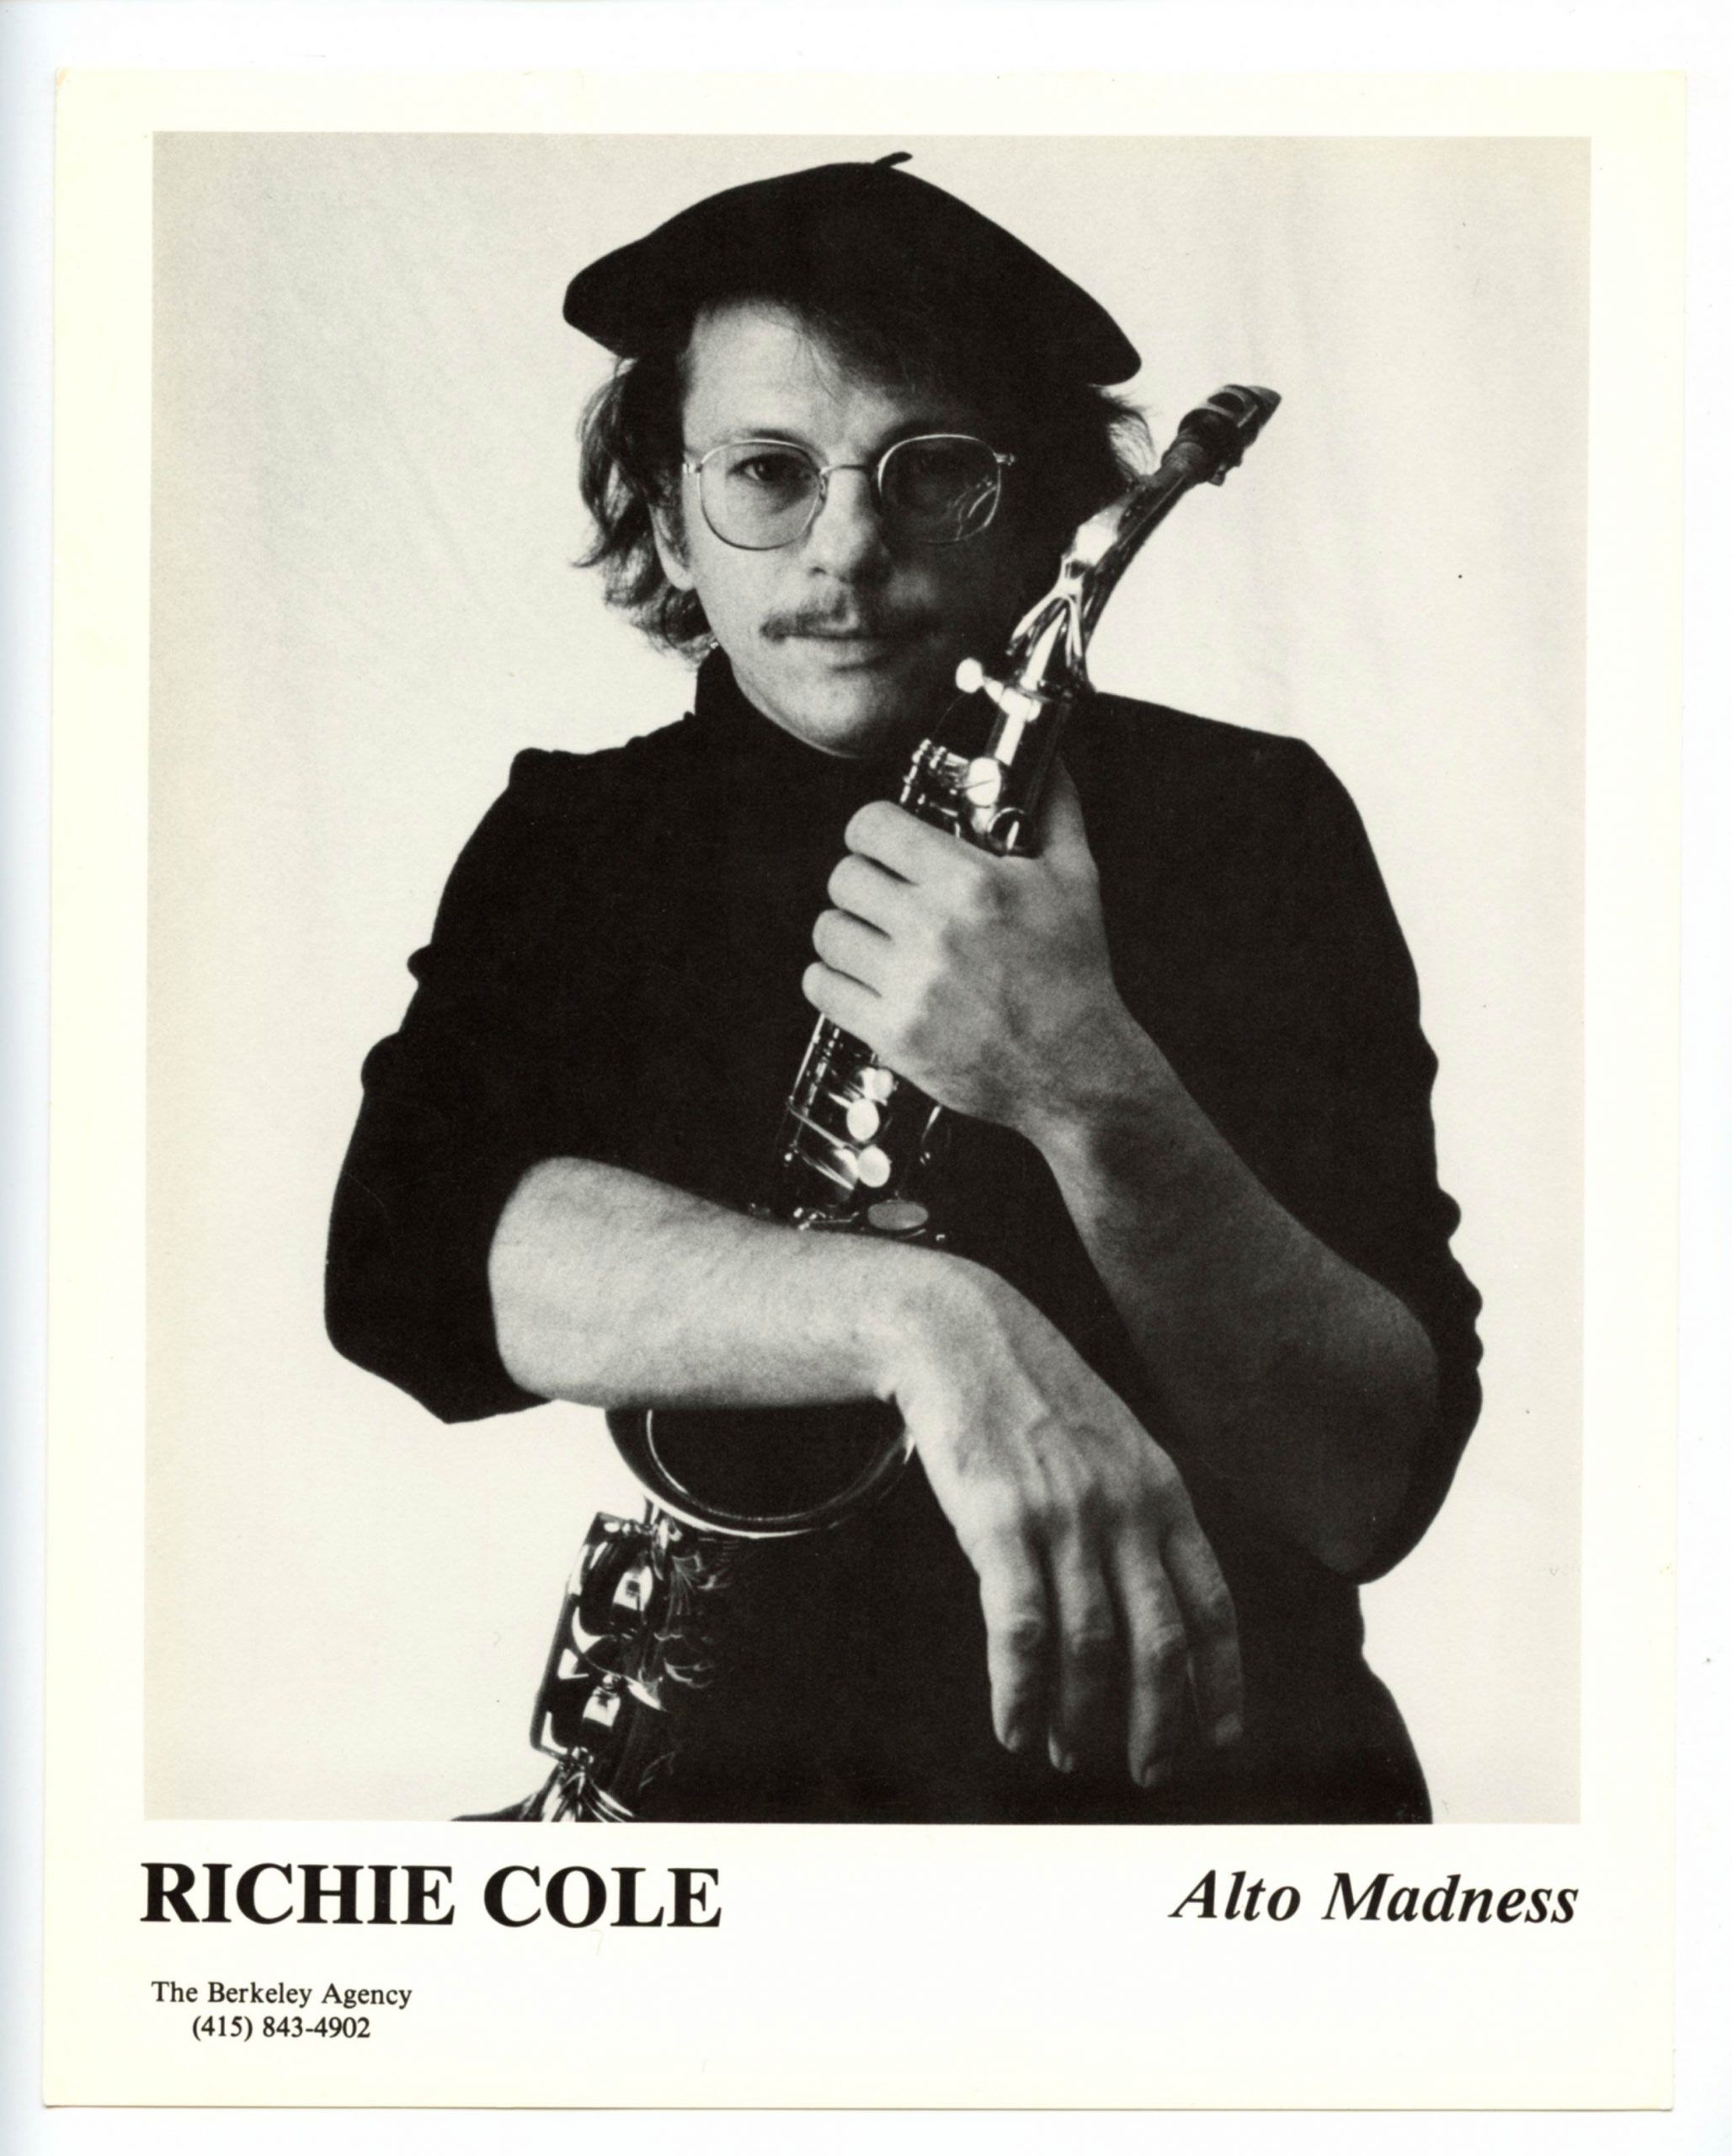 Richie Cole Photo 1970s Publicity Promotion